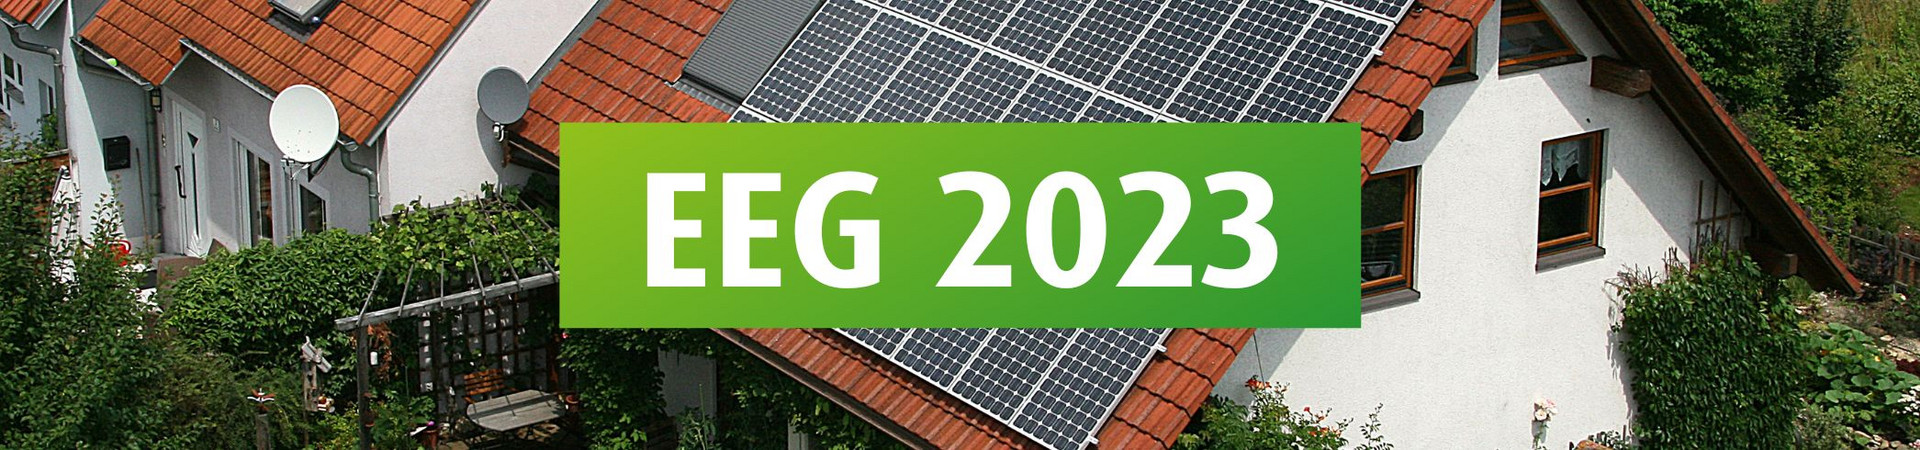 EEG 2023 Photovoltaik